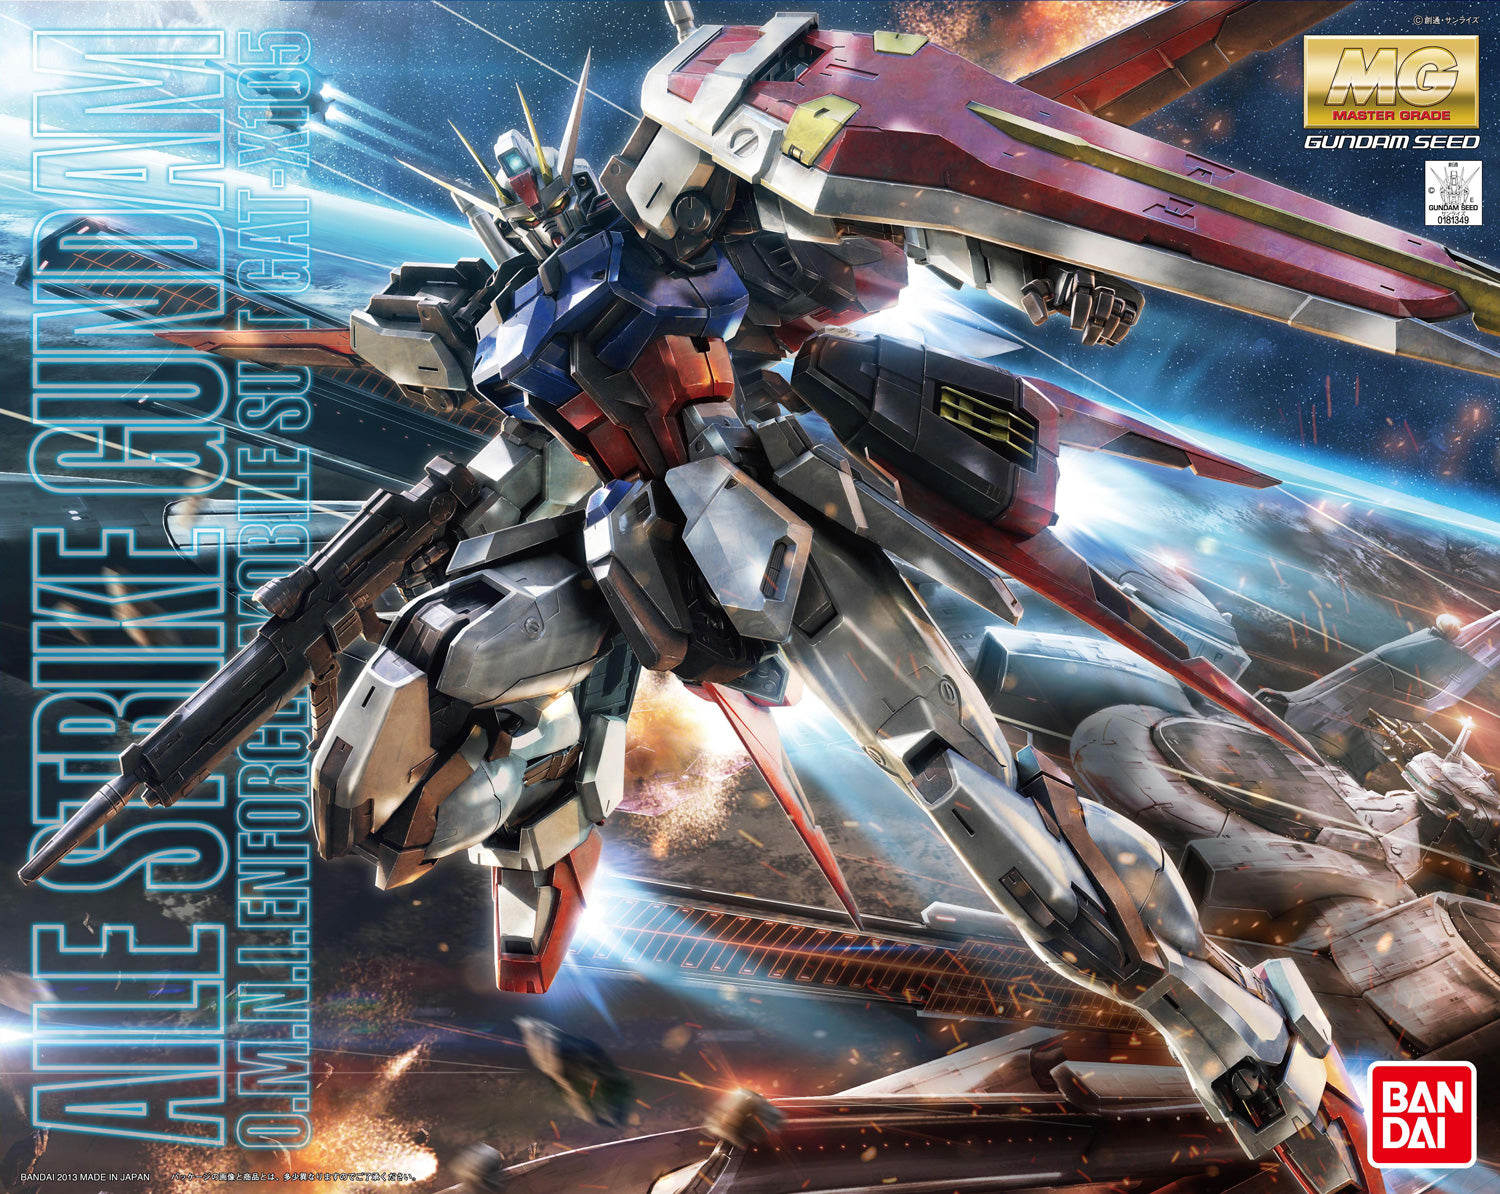 MG - GAT-X105 Aile Strike Gundam Ver. RM